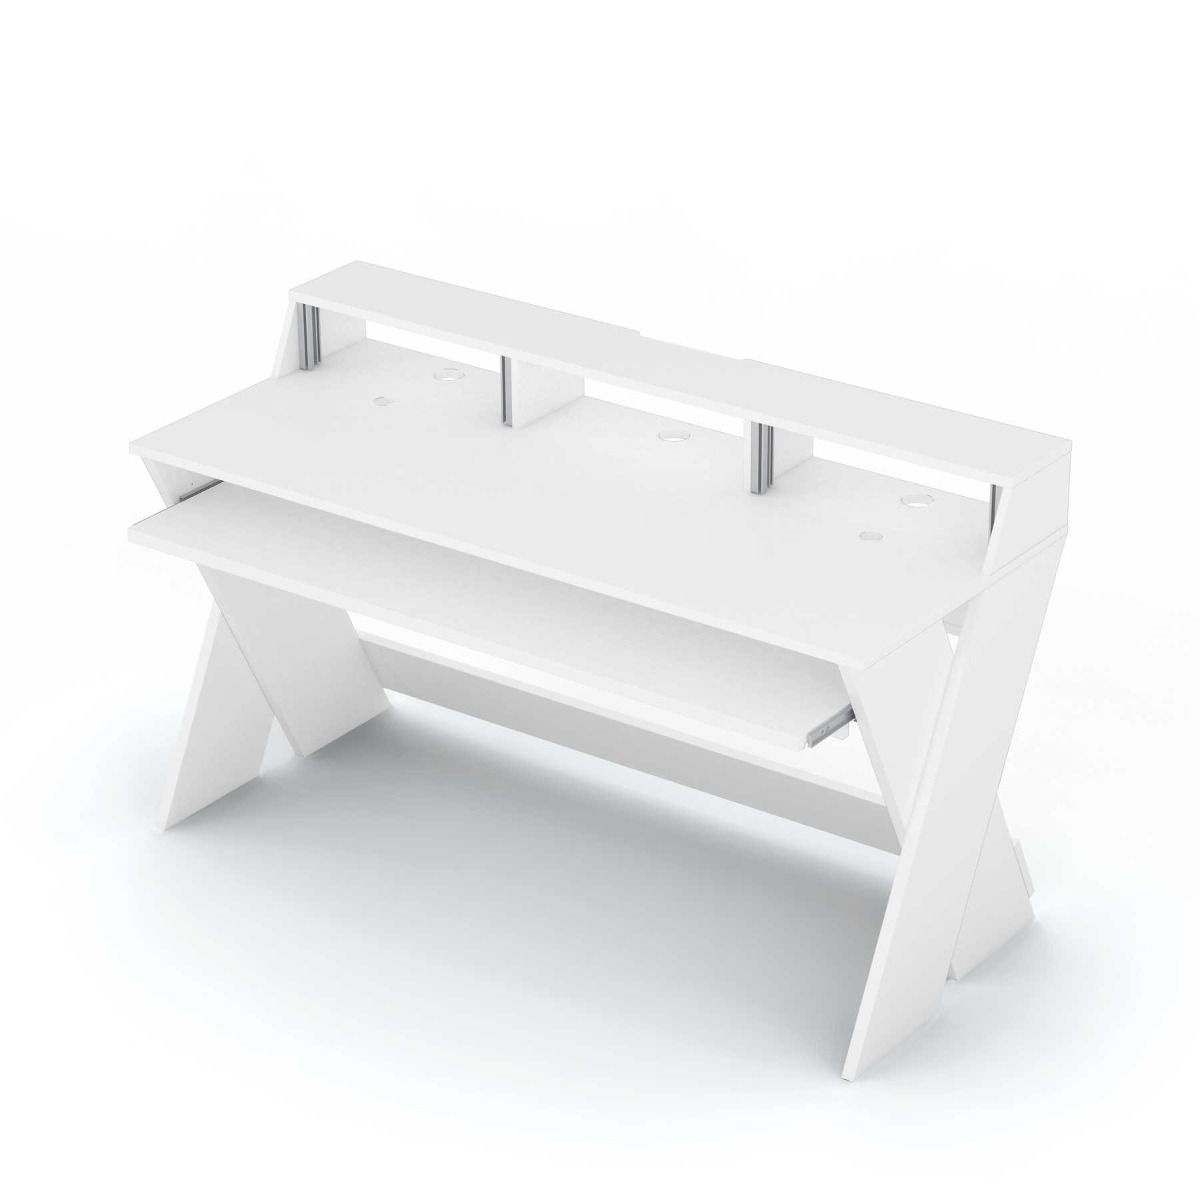 Аксессуары для DJ оборудования Glorious Sound Desk Pro White стойка для стола zeapon vlogtopus desk mount kit dm h1